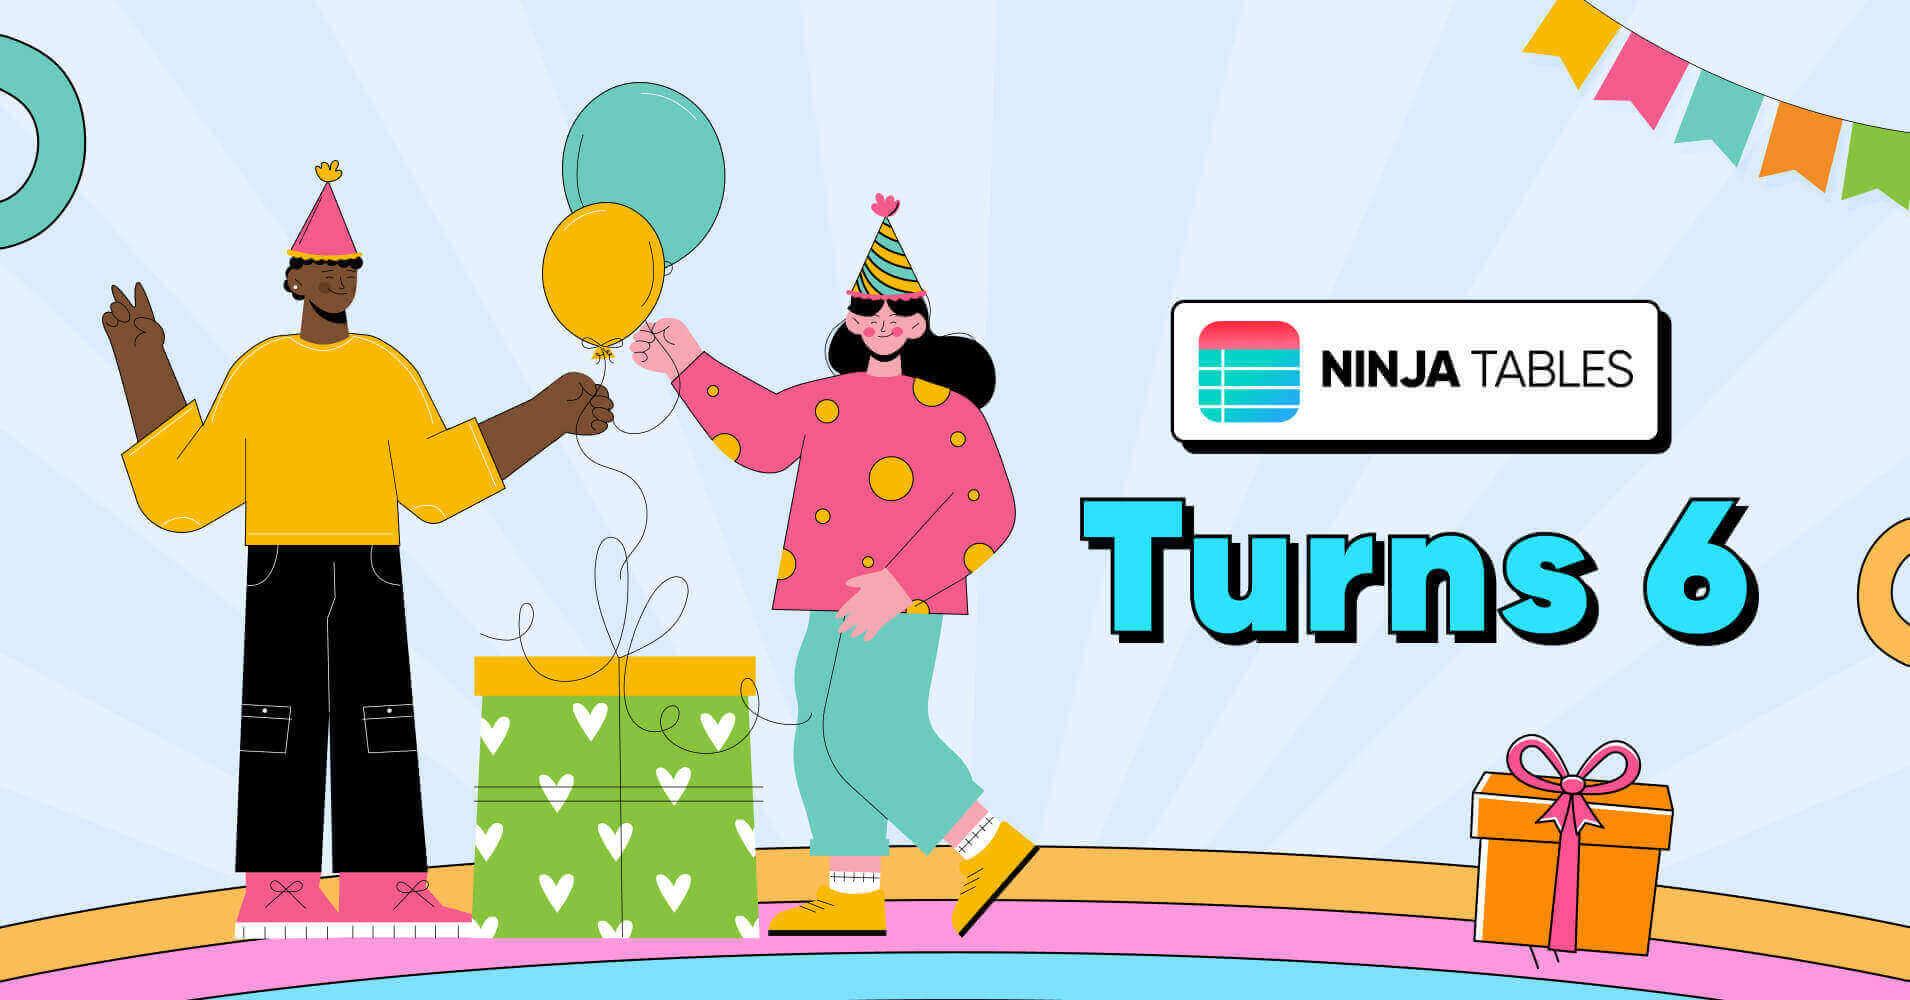 Ninja Tables Turns 6!